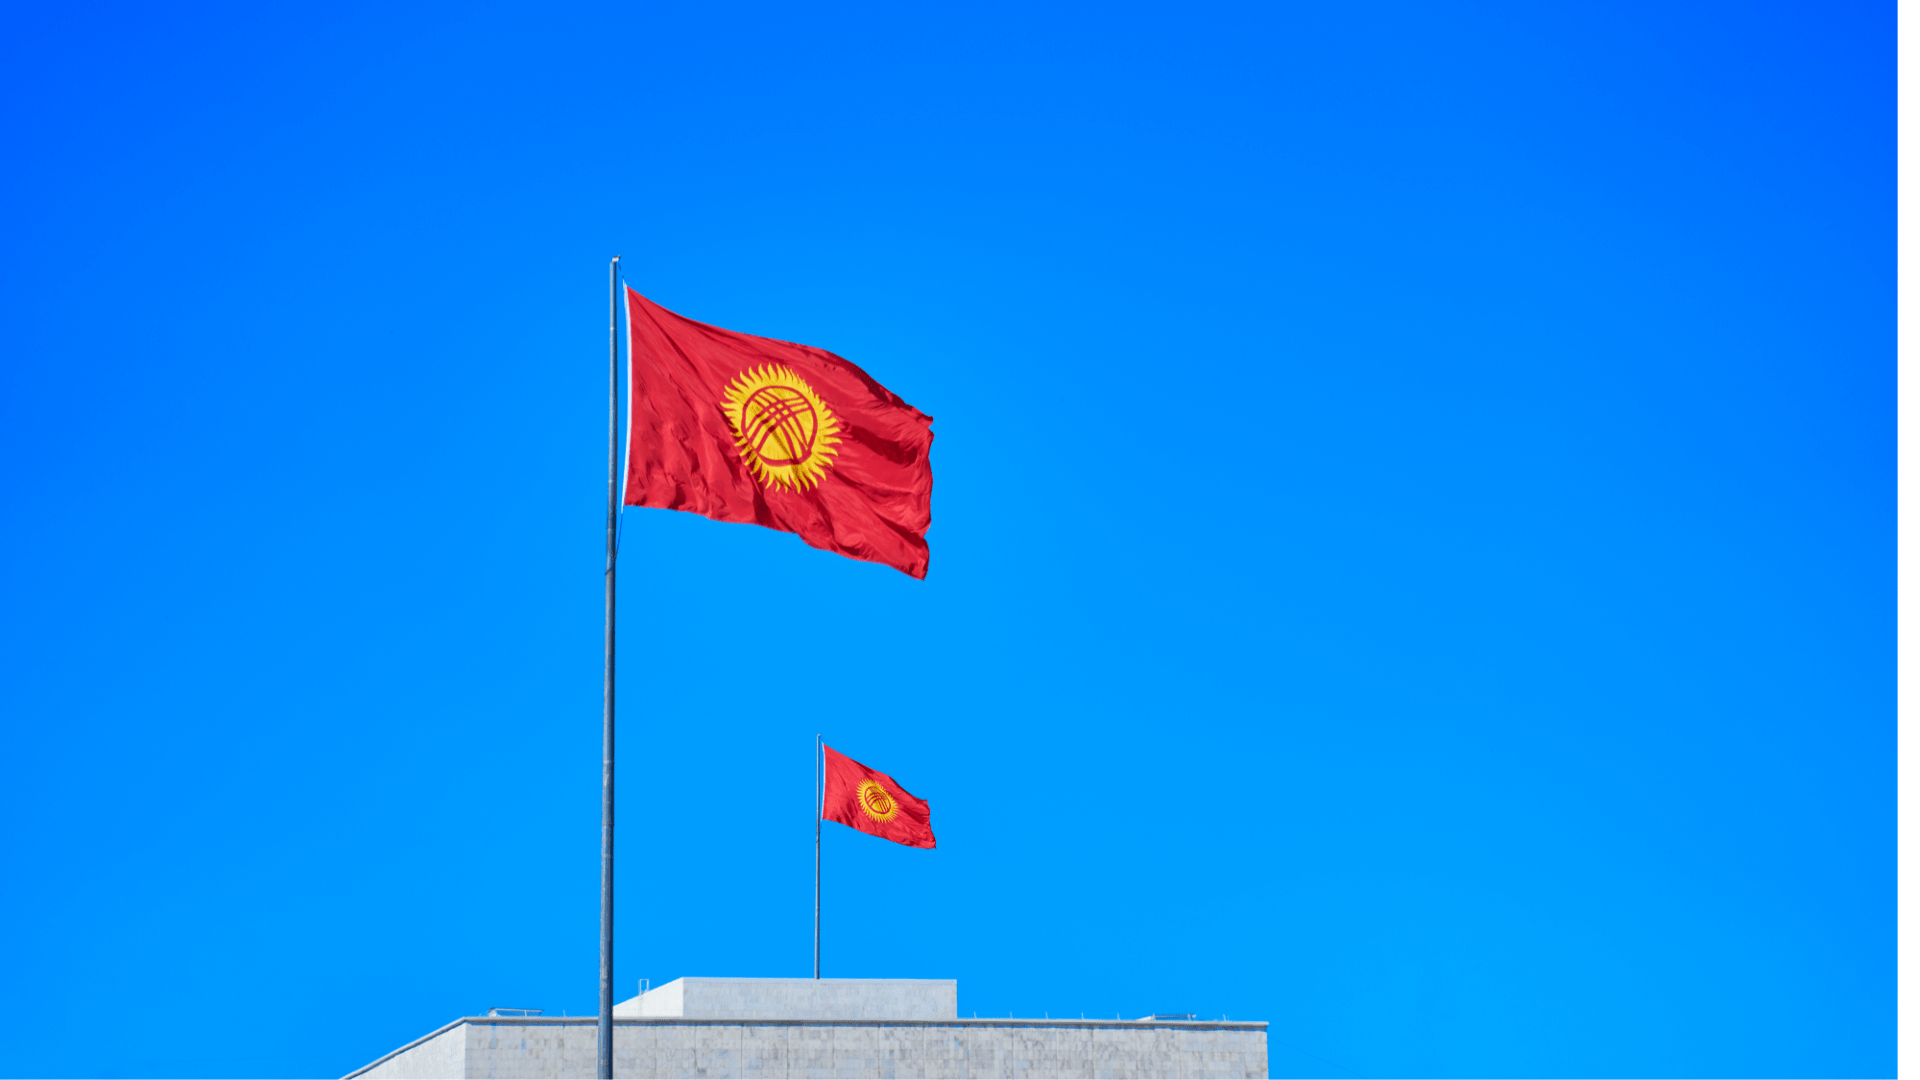 Британия влила миллионы в НКО Кыргызстана для продвижения своих «ценностей»